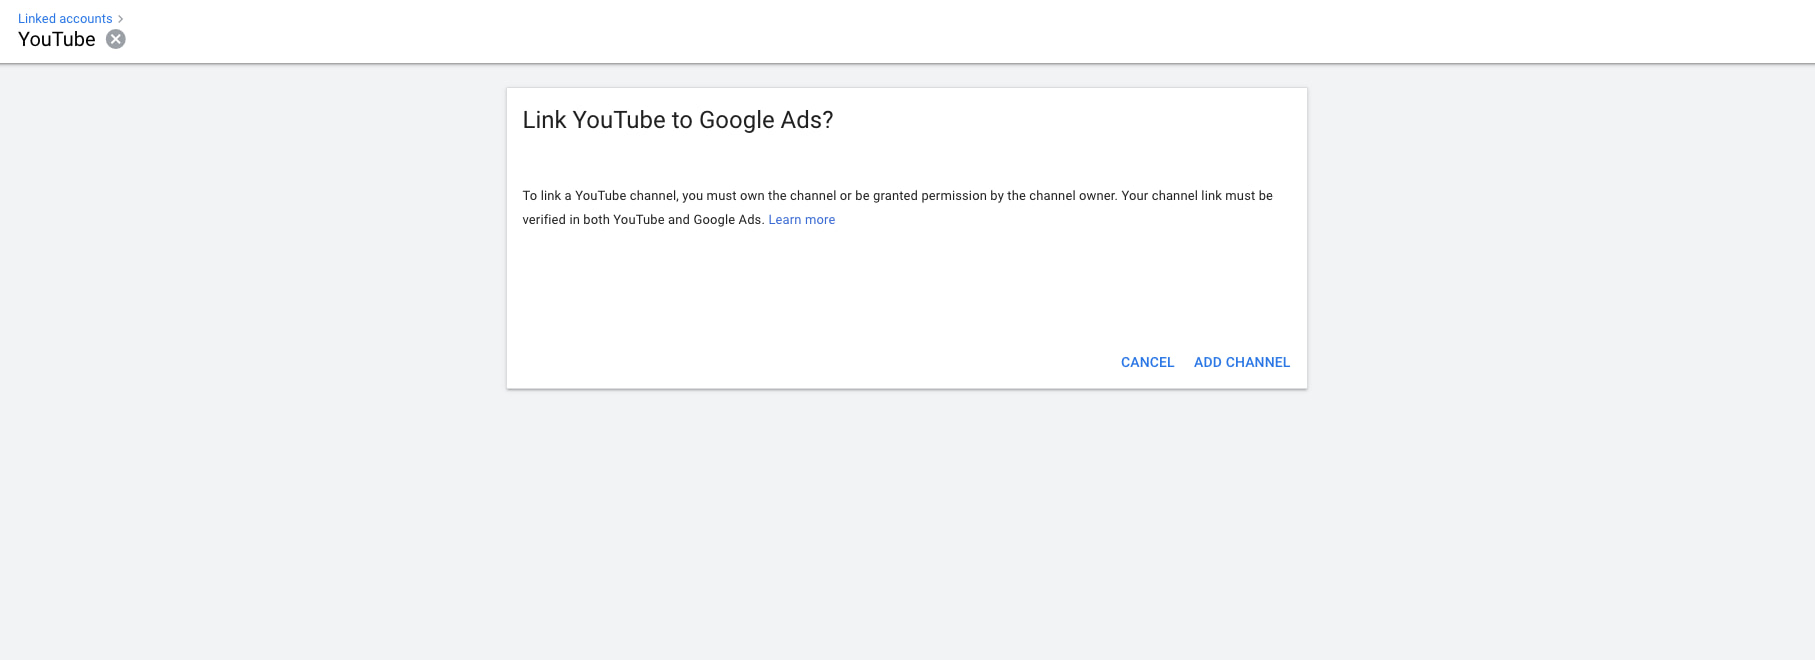 پیوند دادن کانال YouTube به Google Ads